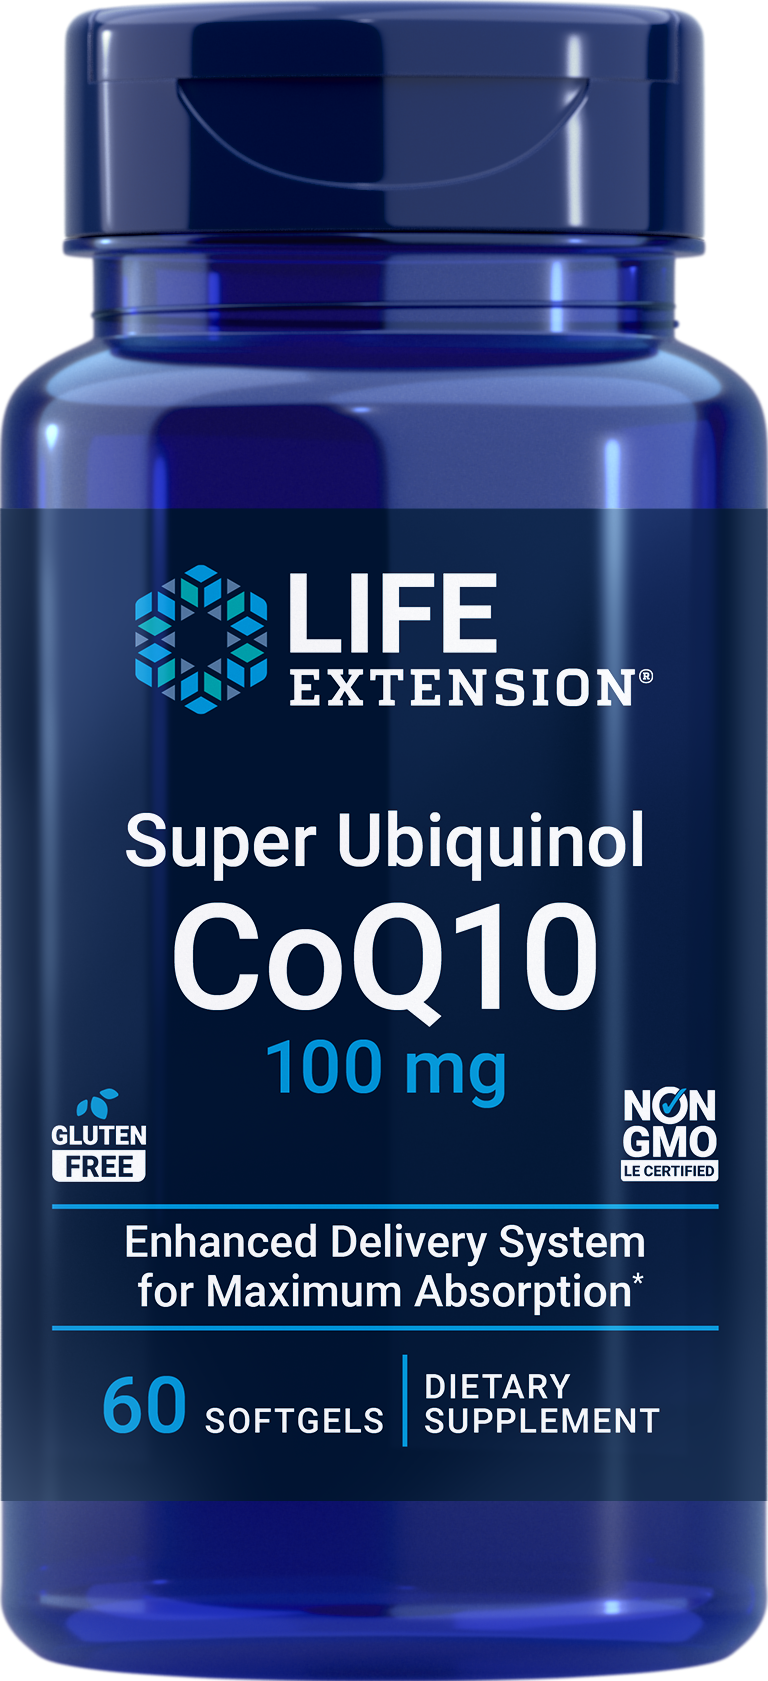 Life Extension Super Ubiquinol CoQ10 100mg (60 Softgels)